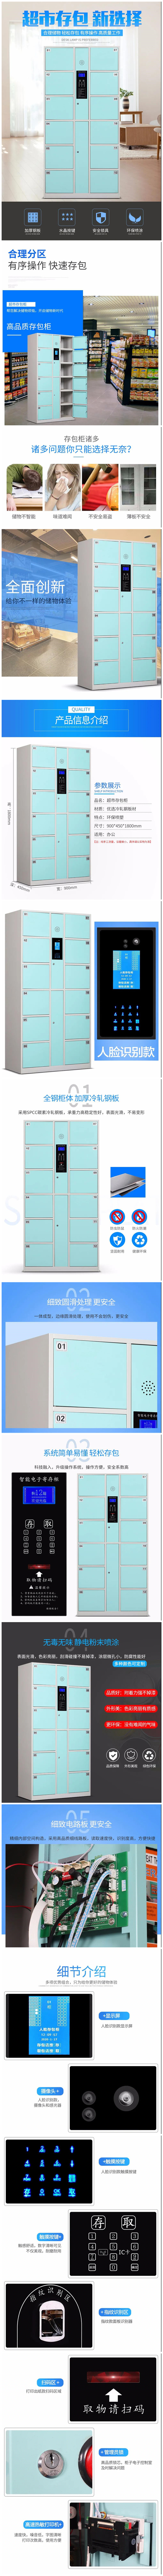 金华寄存柜随身物品保管 浴场存包柜按需求定制